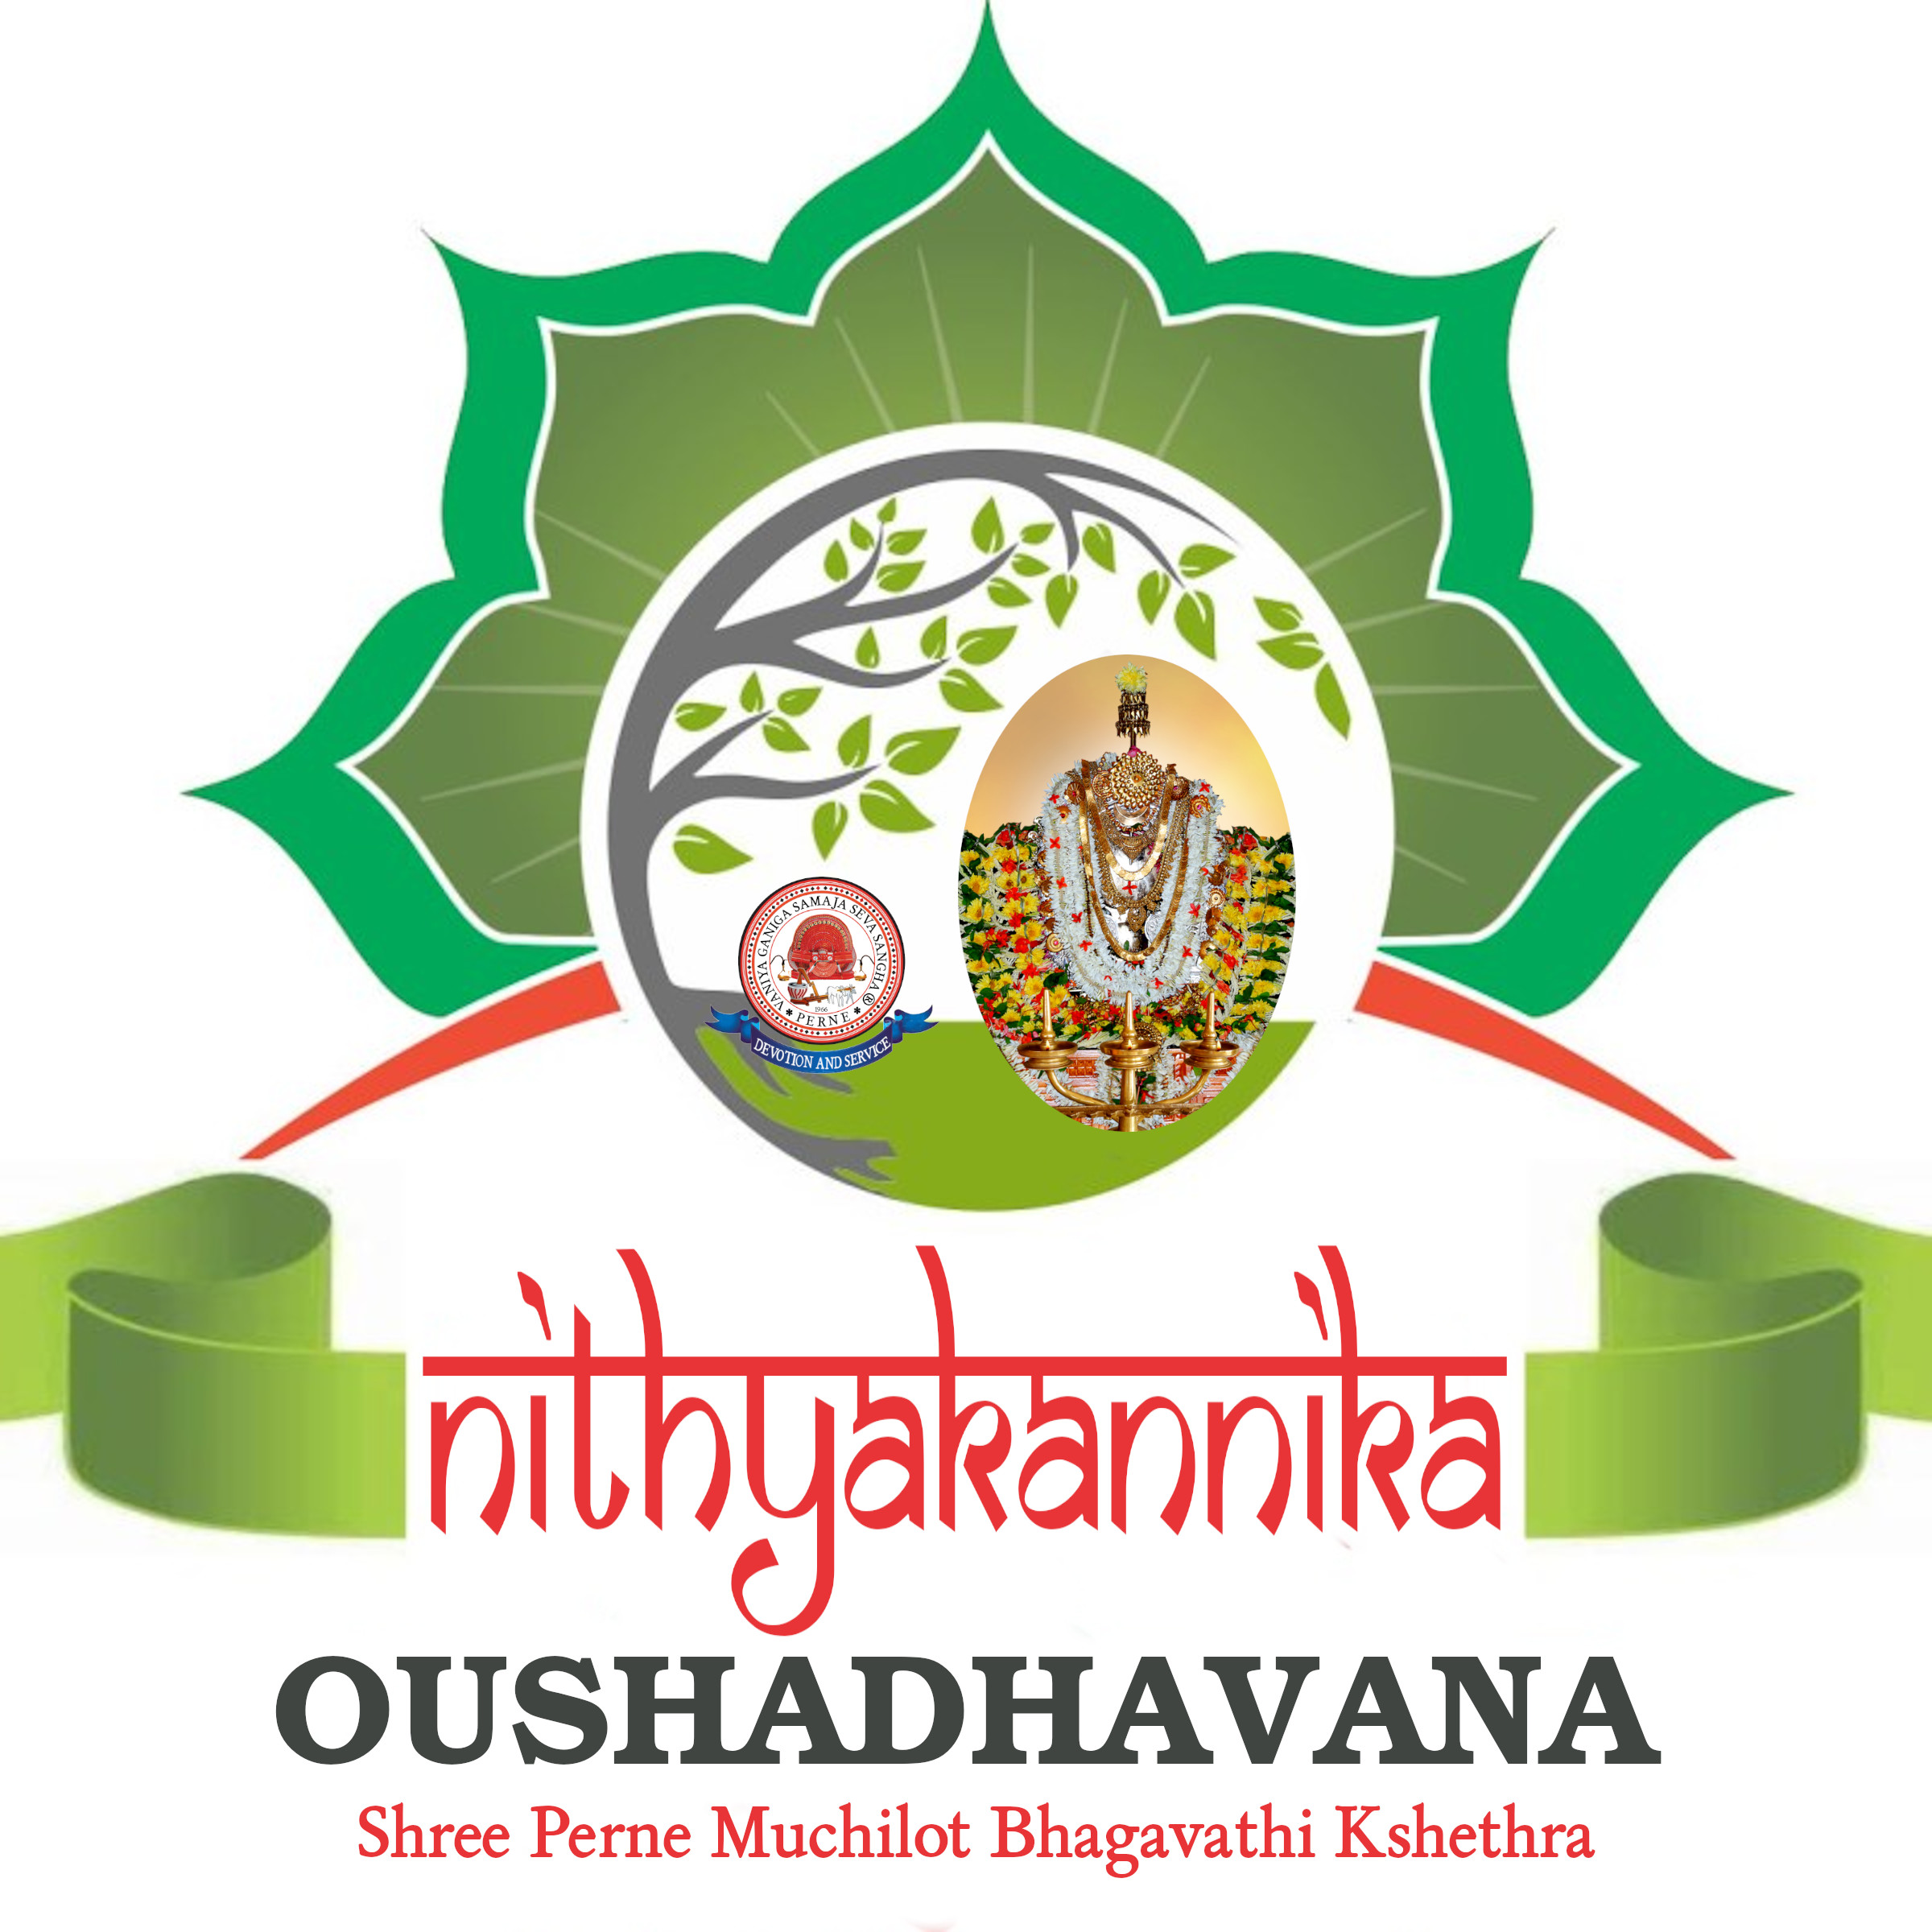 oushadahavana logo